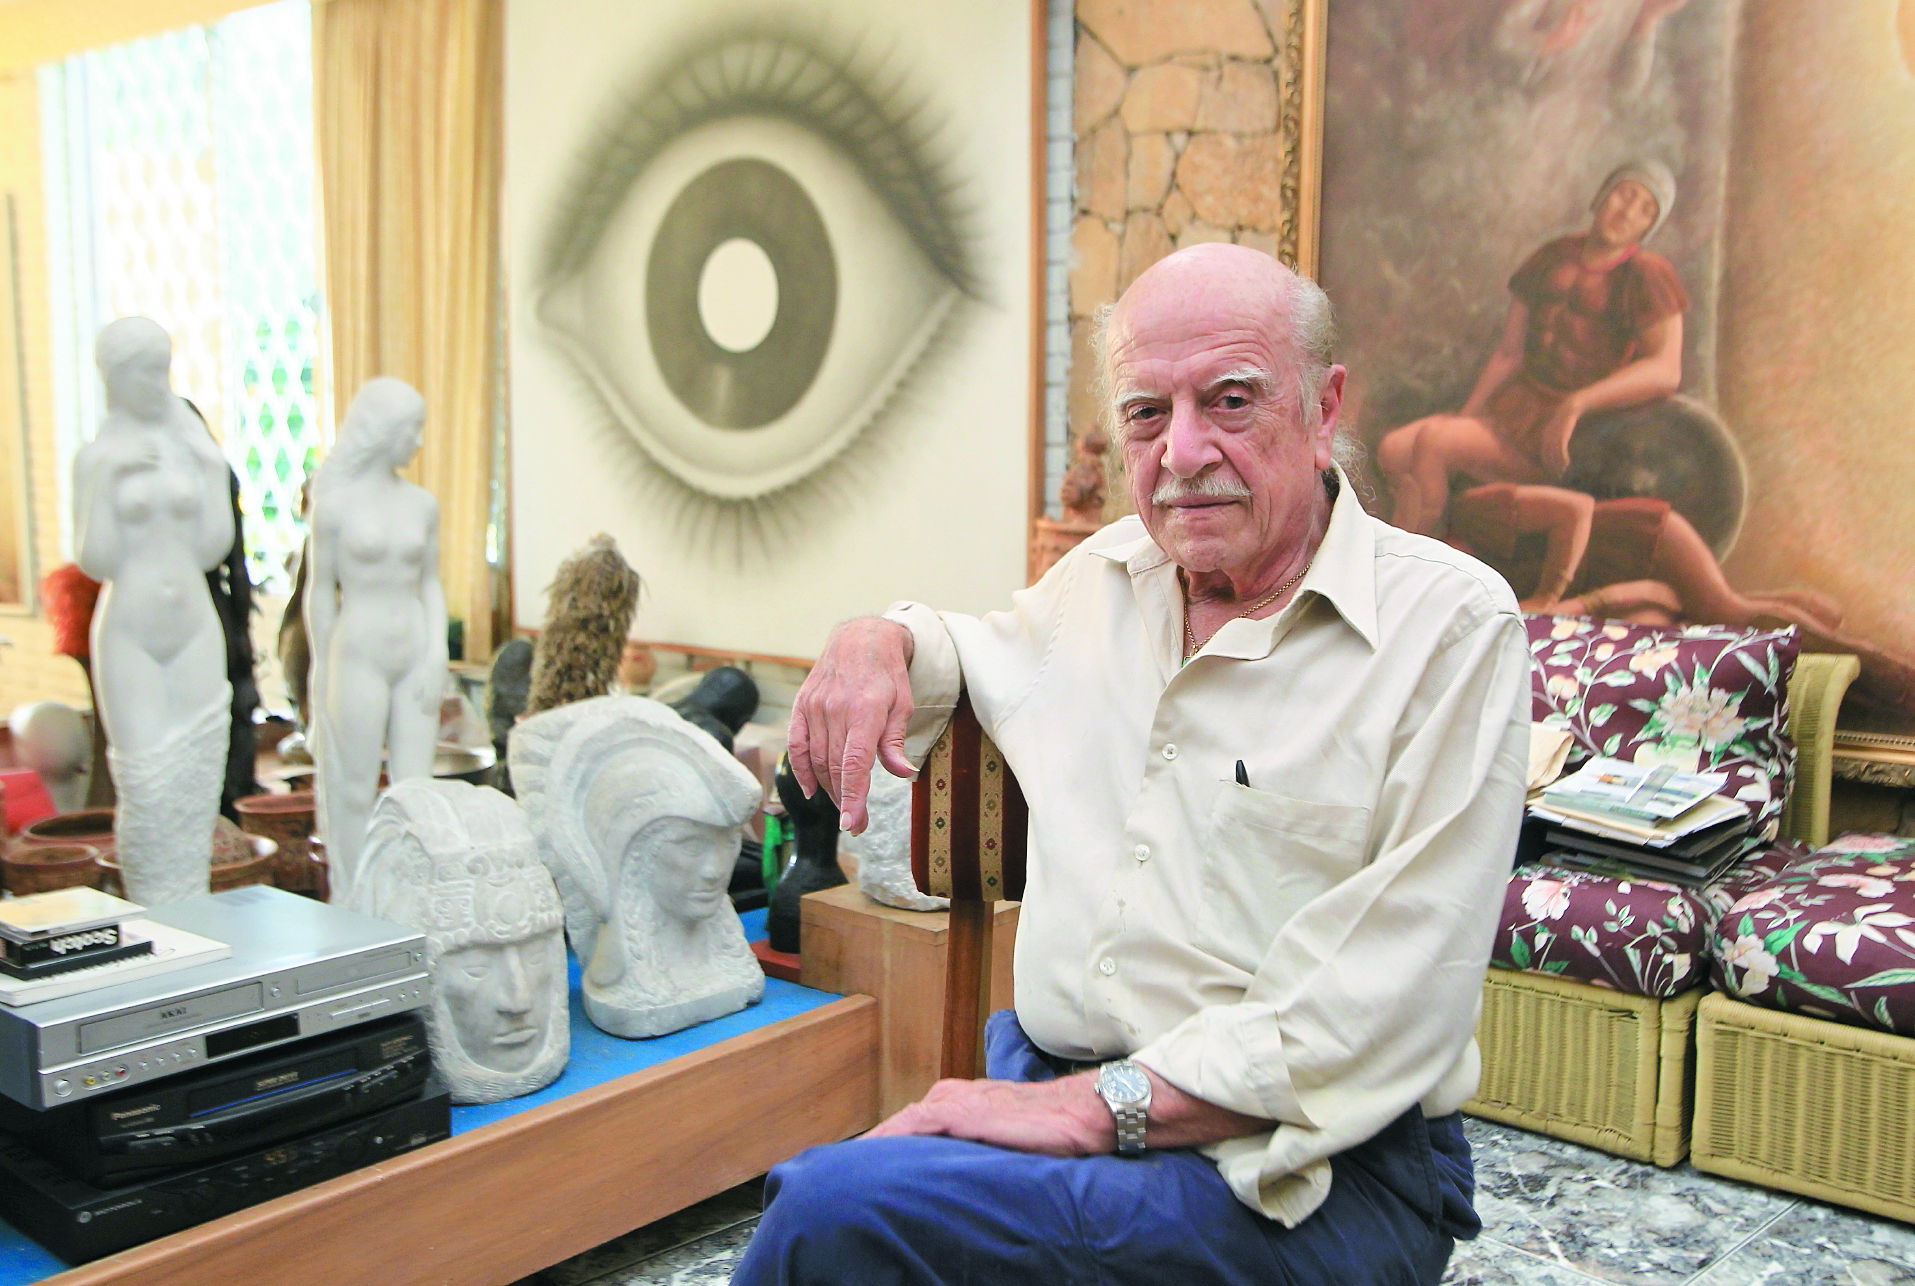 Rodolfo Abularach demostró pasión por las artes desde su niñez y adolescencia.  (Foto Prensa Libre: Hemeroteca PL)